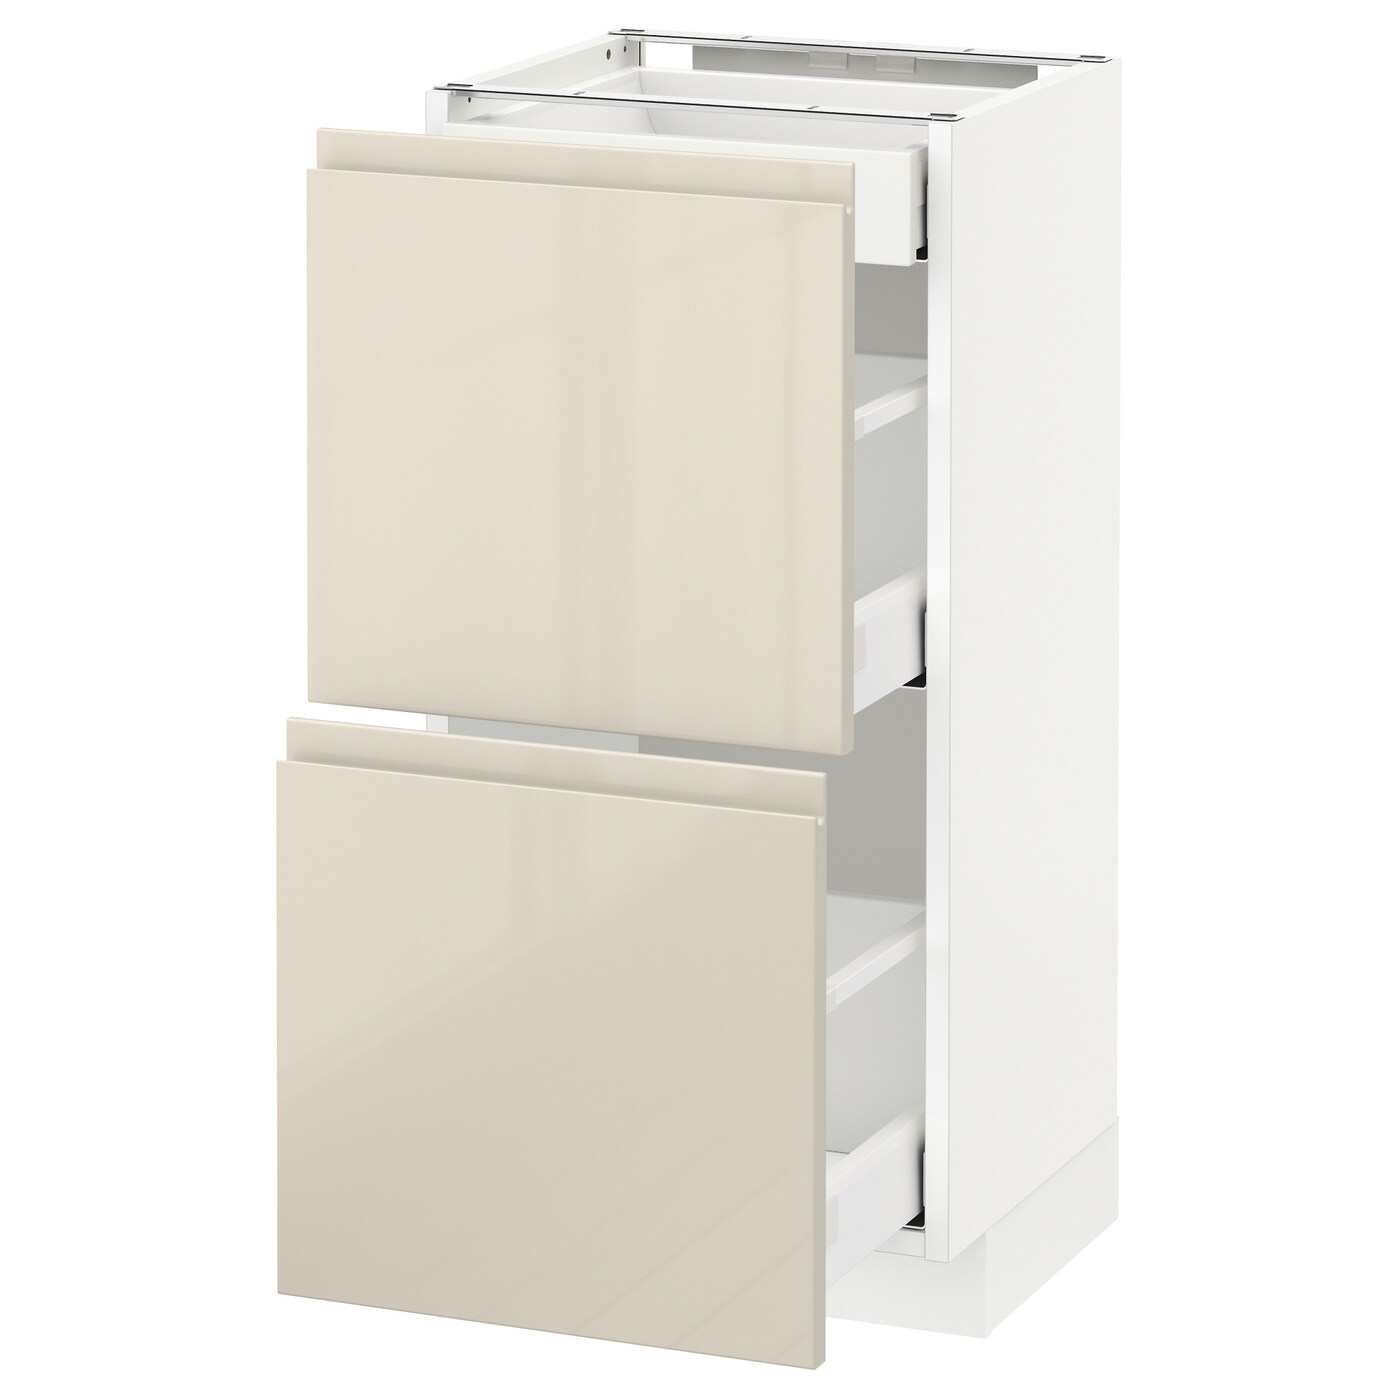 Напольный кухонный шкаф  - IKEA METOD MAXIMERA, 88x39,1x40см, белый/бежевый, МЕТОД МАКСИМЕРА ИКЕА